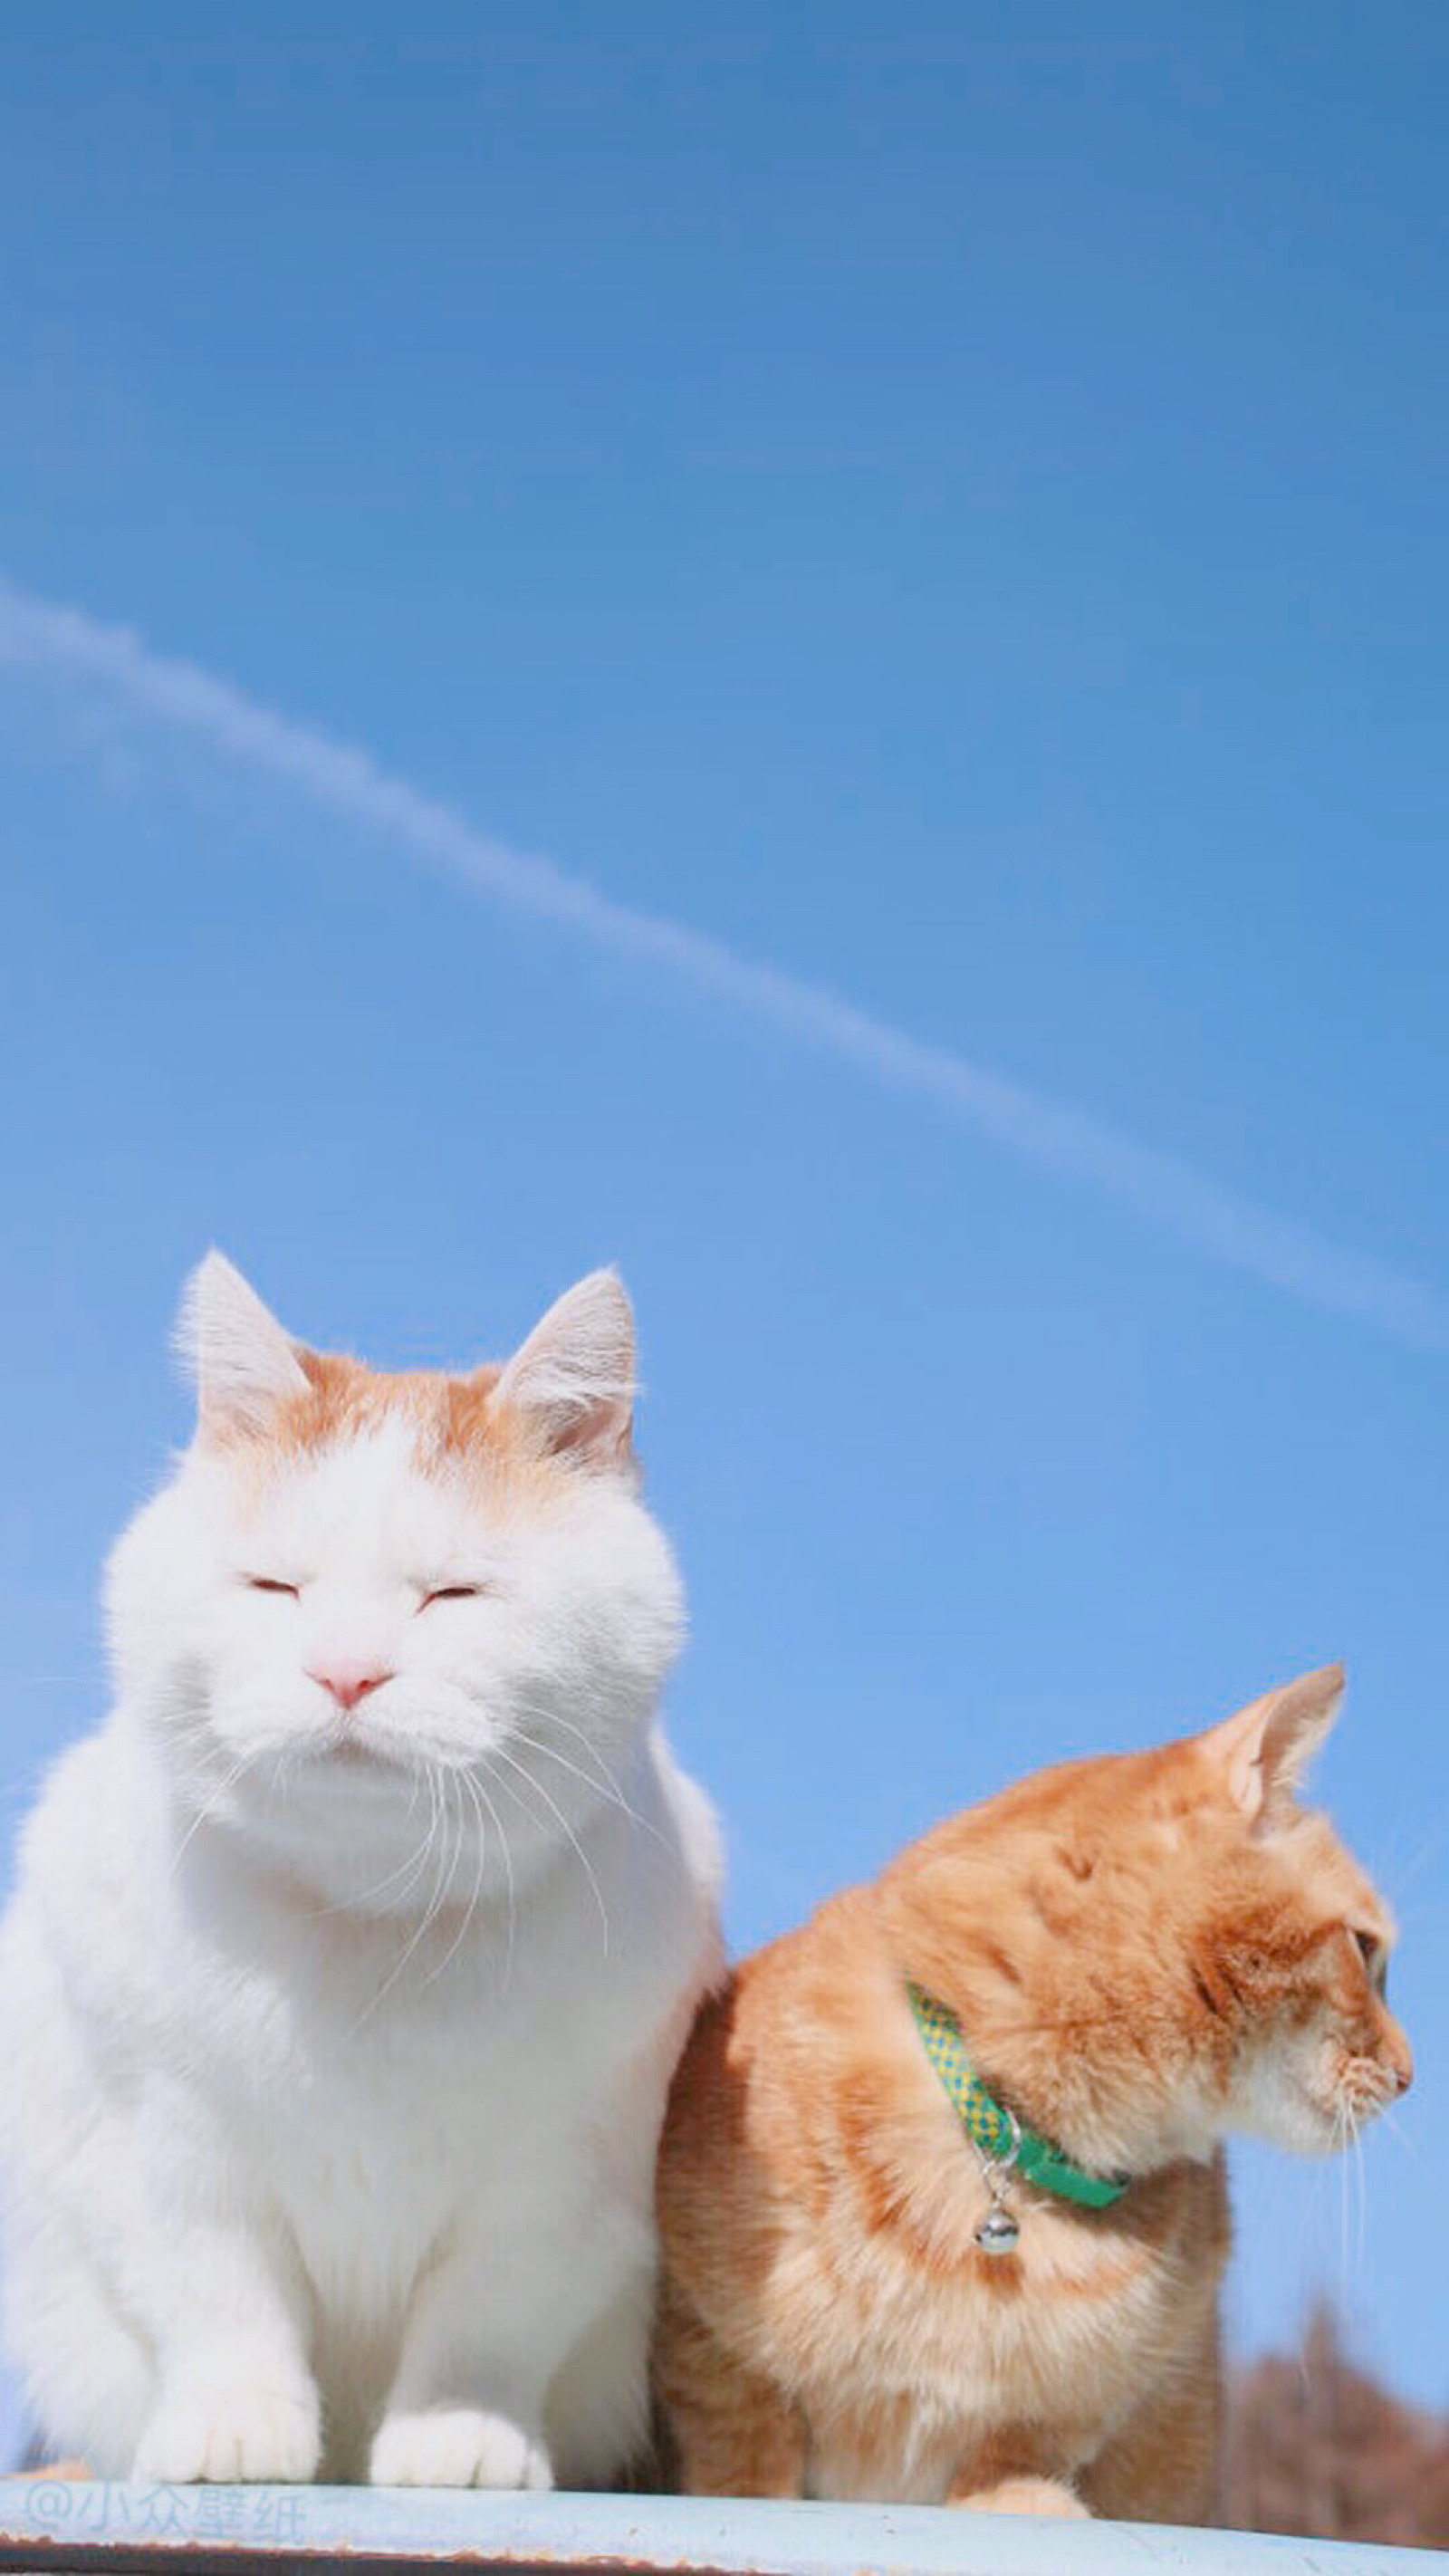 头像 背景图 壁纸 宠物 猫咪 橘猫 天空 蓝色